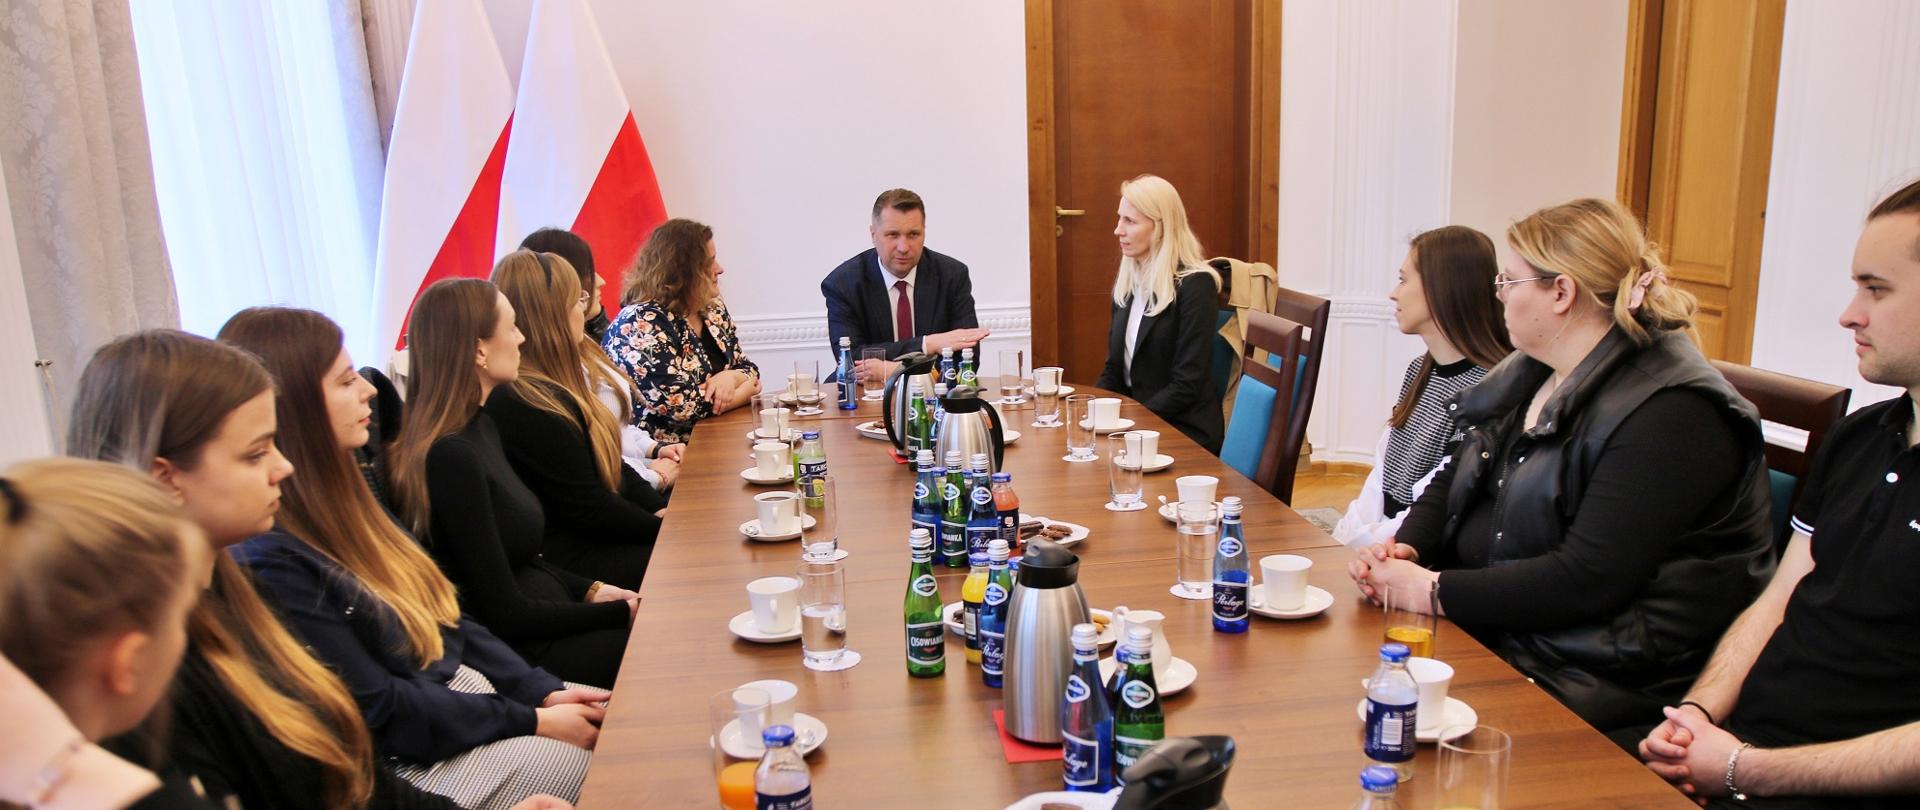 Po obu stronach długiego prostokątnego stołu siedzi kilkanaście młodych osób, u szczytu stołu minister Czarnek, za nim dwie polskie flagi i biała ściana z drewnianymi drzwiami, po lewej zasłonięte firankami okna.